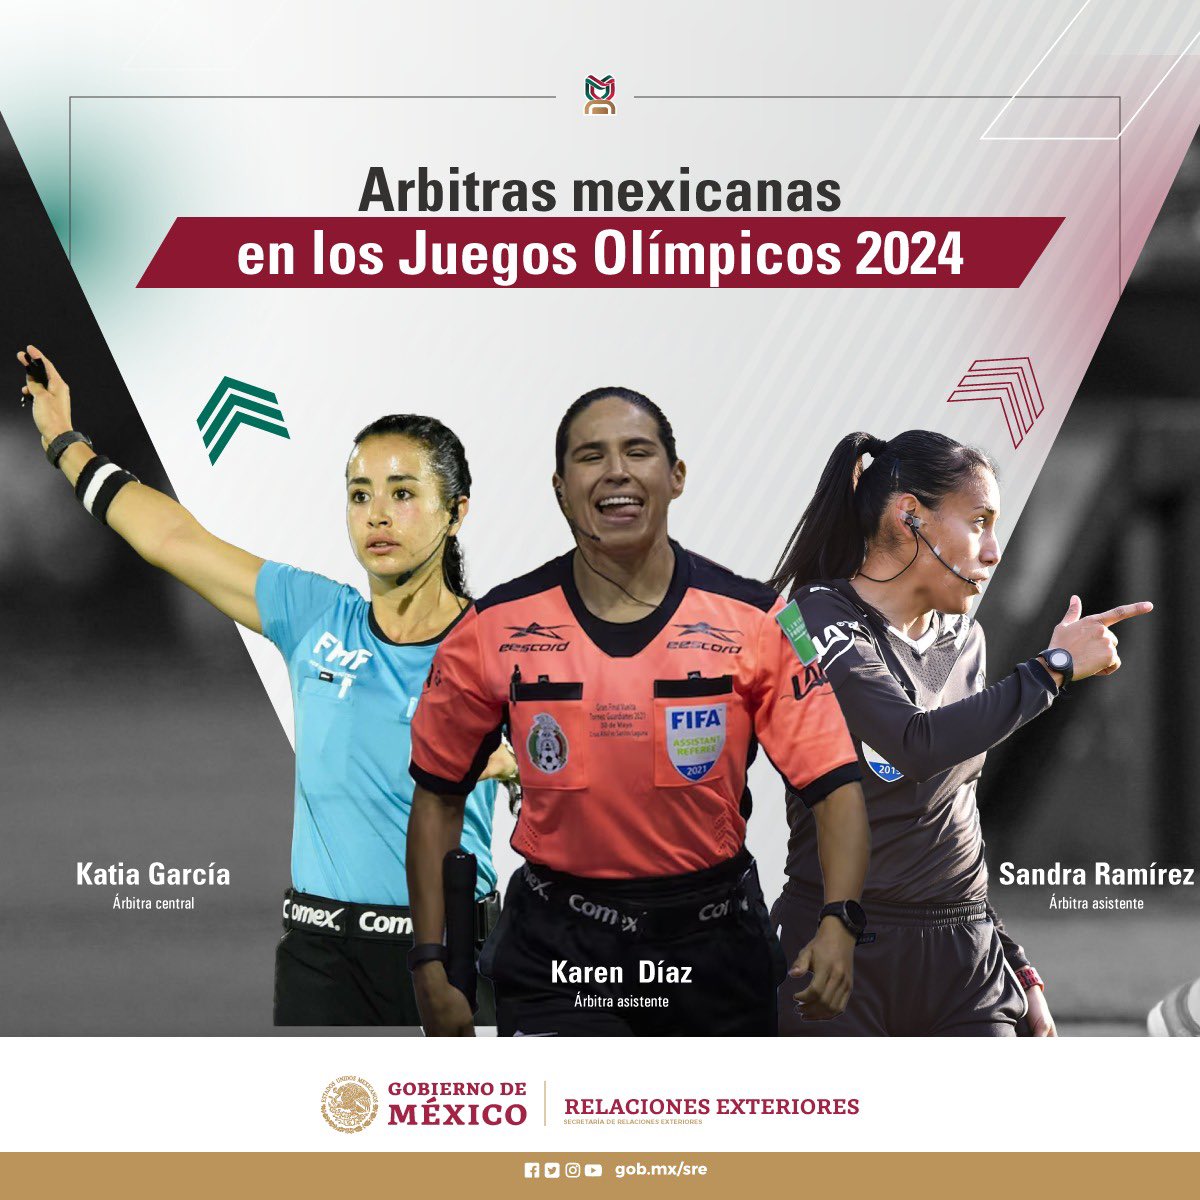 En el Día Internacional del Fútbol Femenino, celebramos a las árbitras mexicanas que representarán a México en los Juegos Olímpicos de París 2024, gracias a su destacado desempeño en la Liga MX Femenil y a nivel internacional. ¡Un merecido reconocimiento por su @SRE_mx